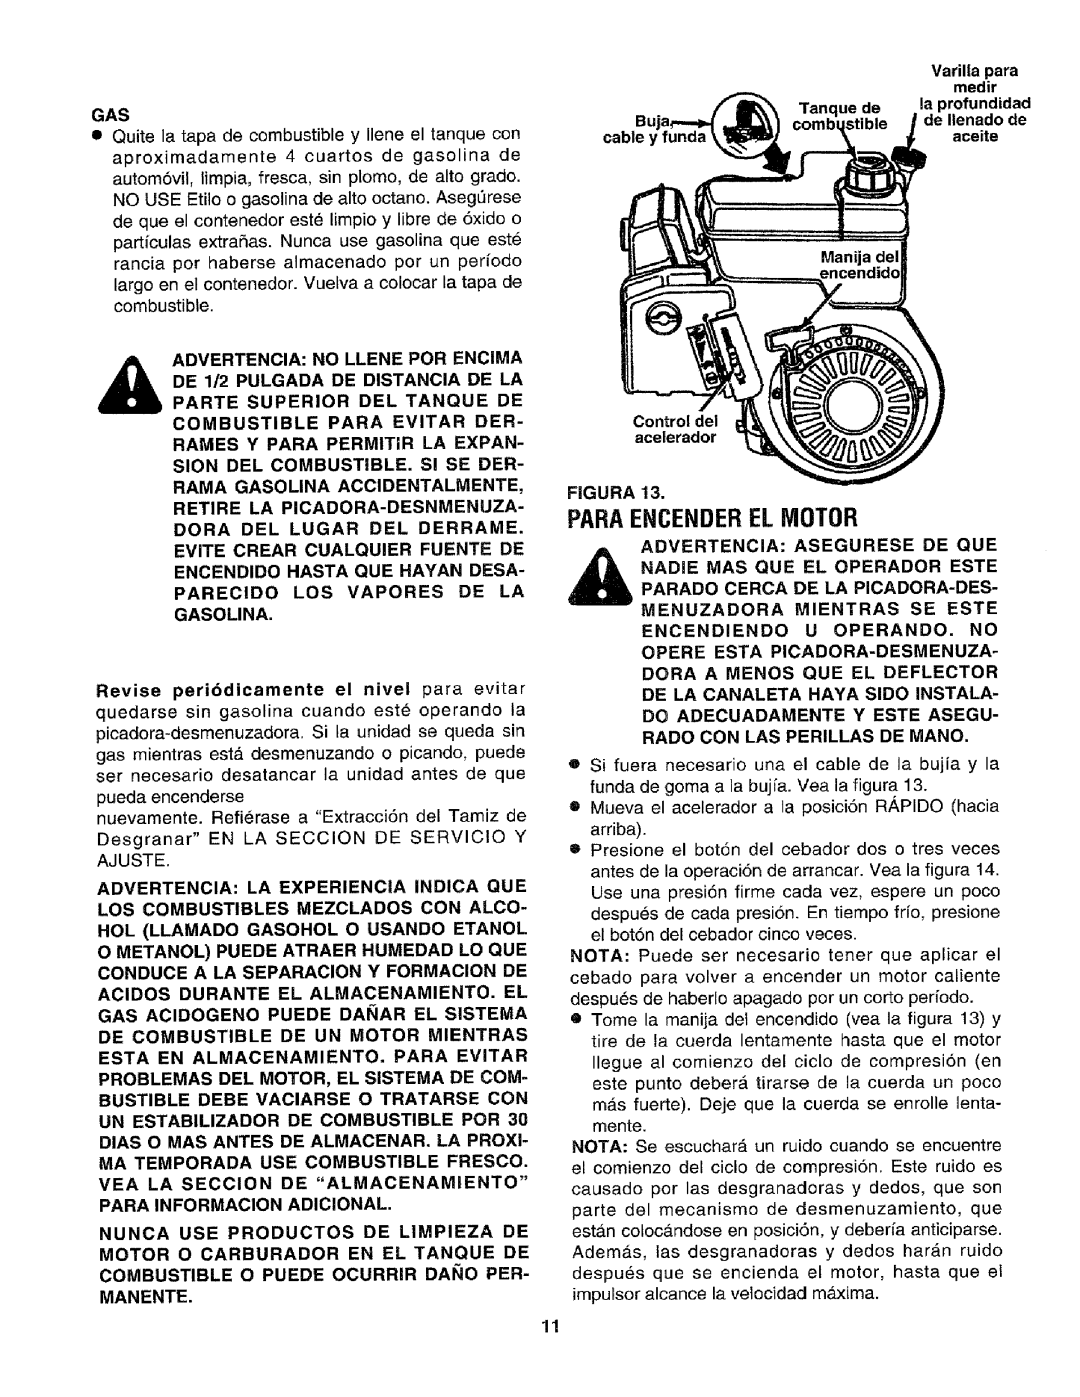 Craftsman 79585 manual Paraencenderel Motor 